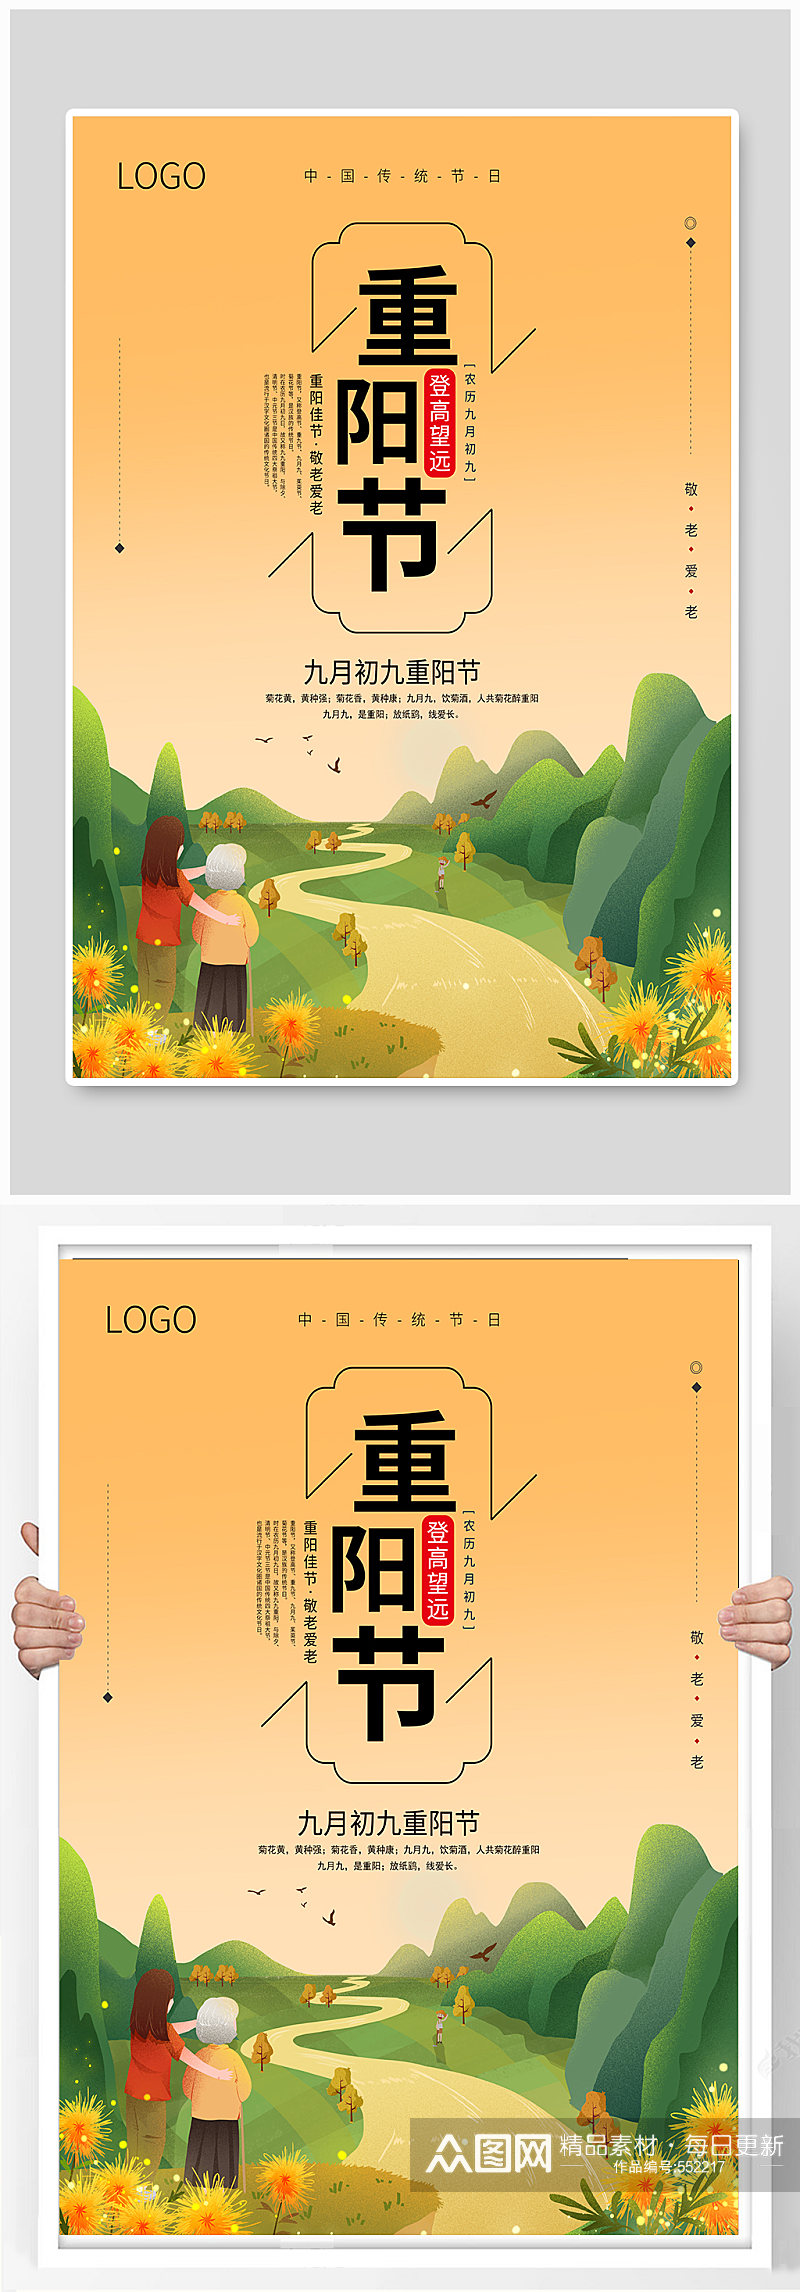 重阳节中国传统节日宣传海报素材